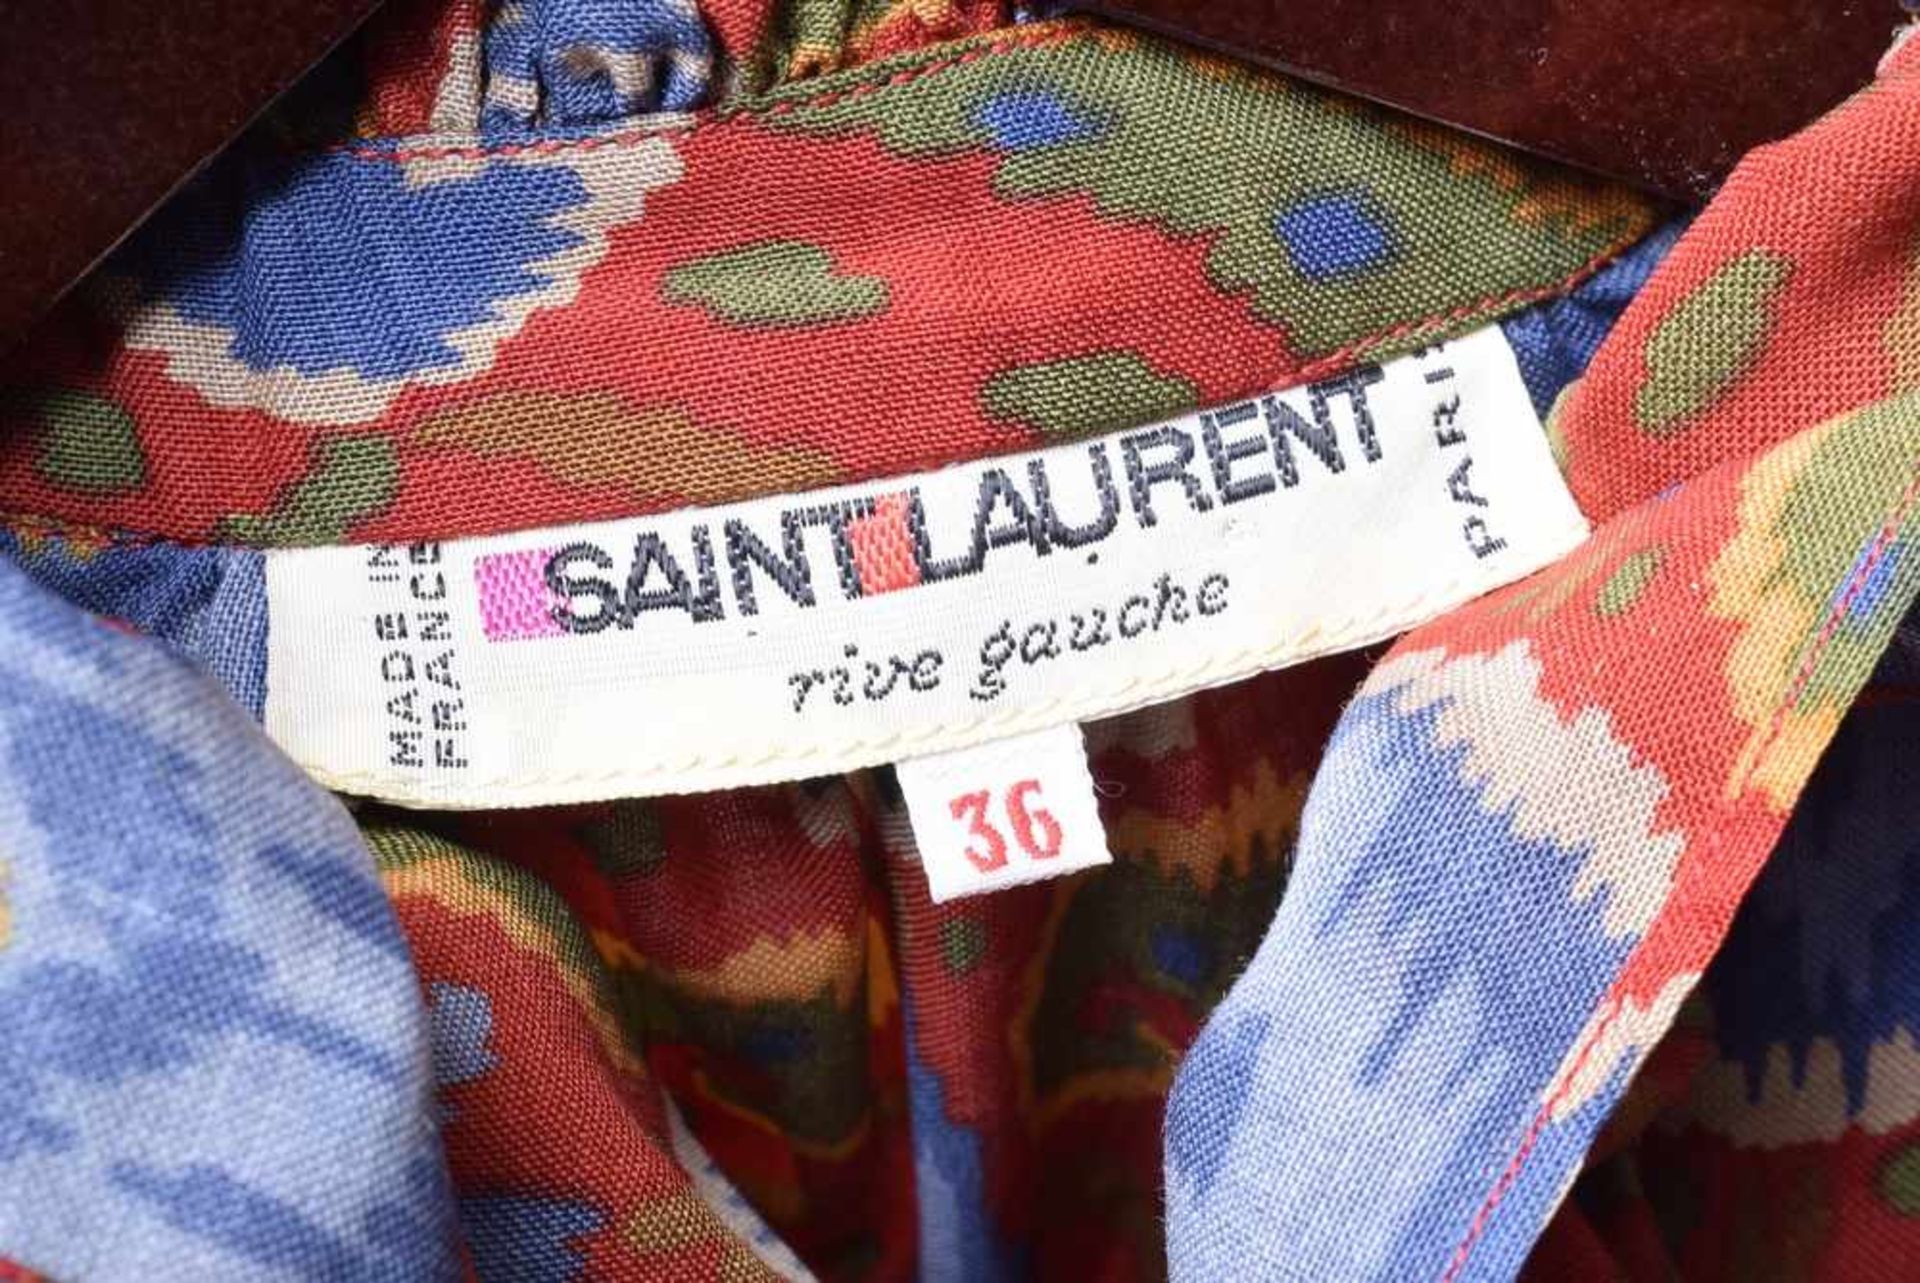 Yves Saint Laurent "rive gauche" Kleid mit gerüschtem Kragen und Manschetten in starkfarbigem Ikat - Bild 3 aus 4